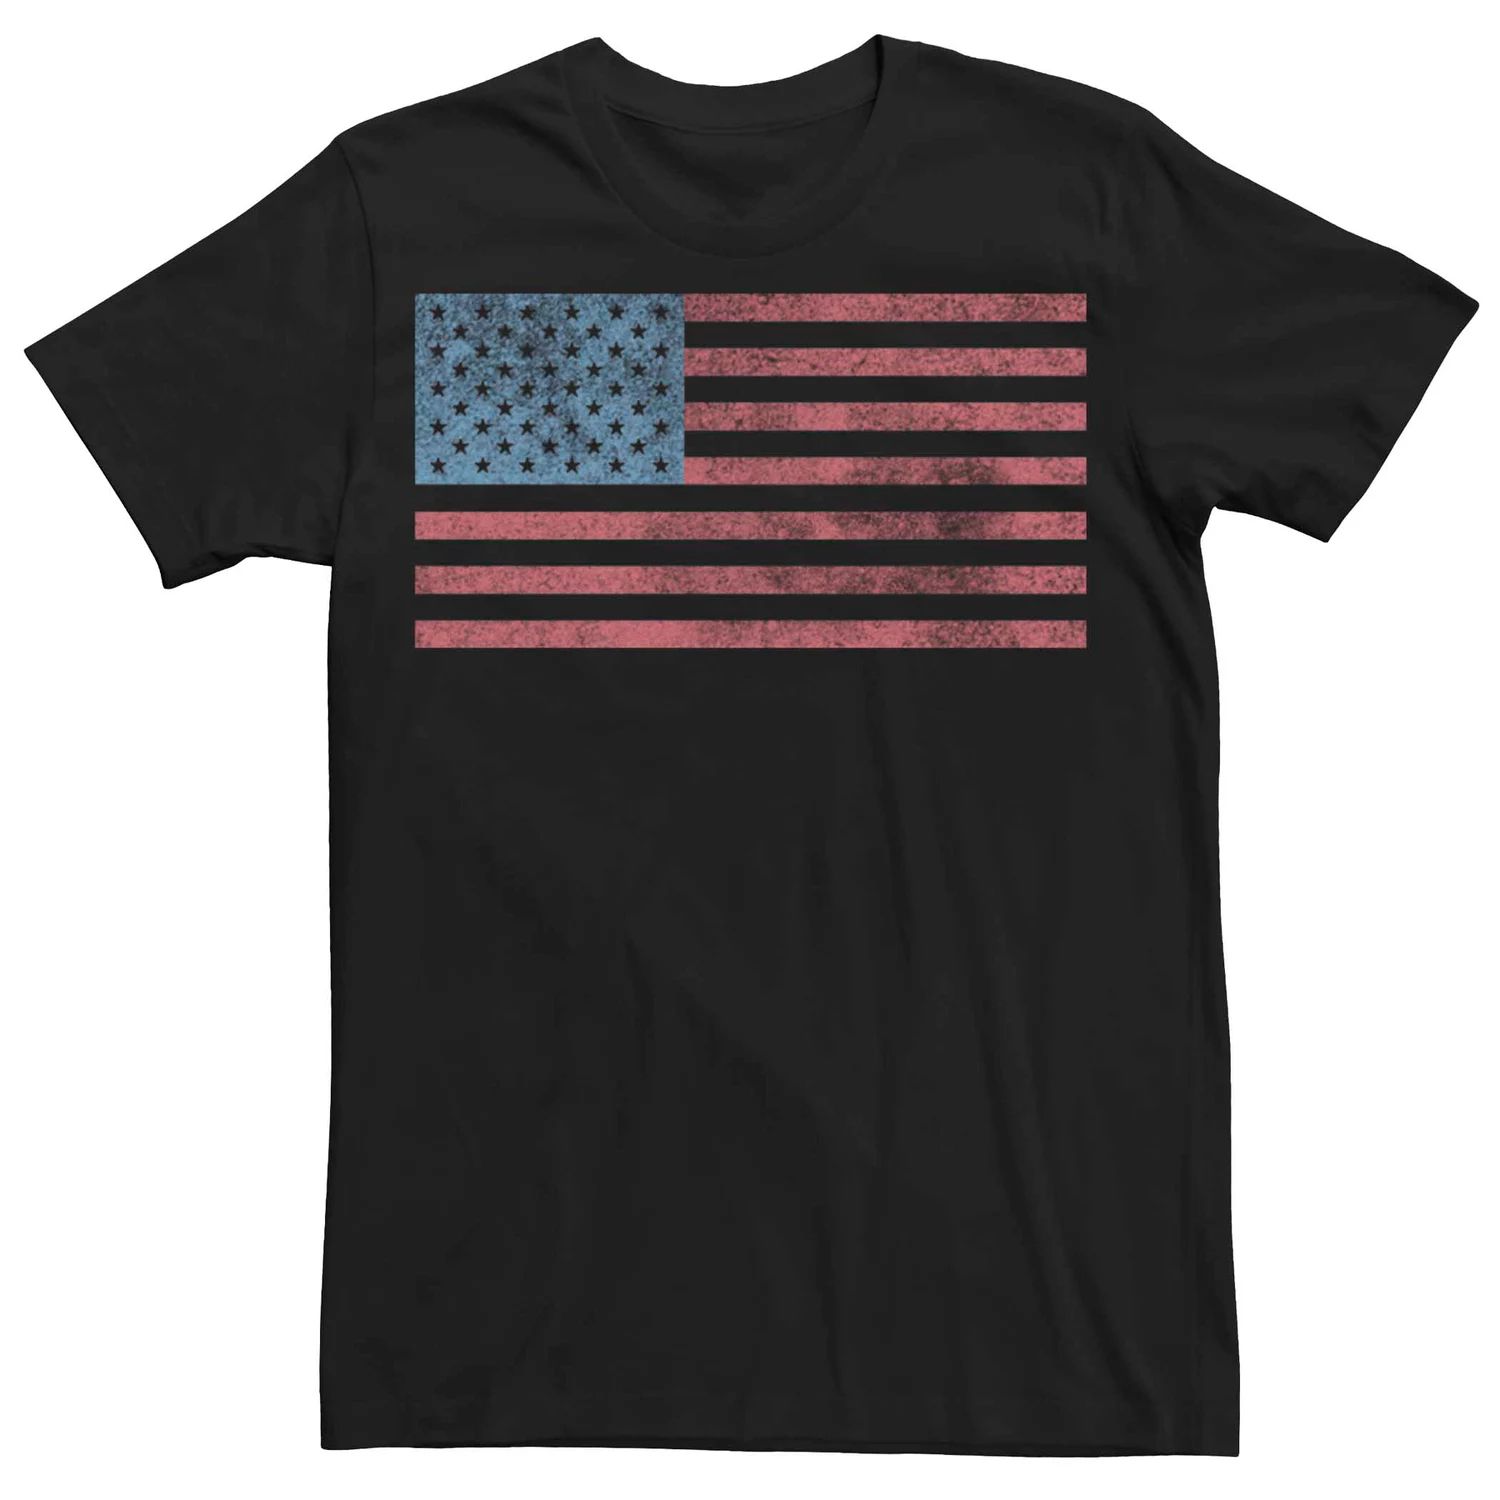 Мужская футболка с рисунком флага США и потертостями Licensed Character фото